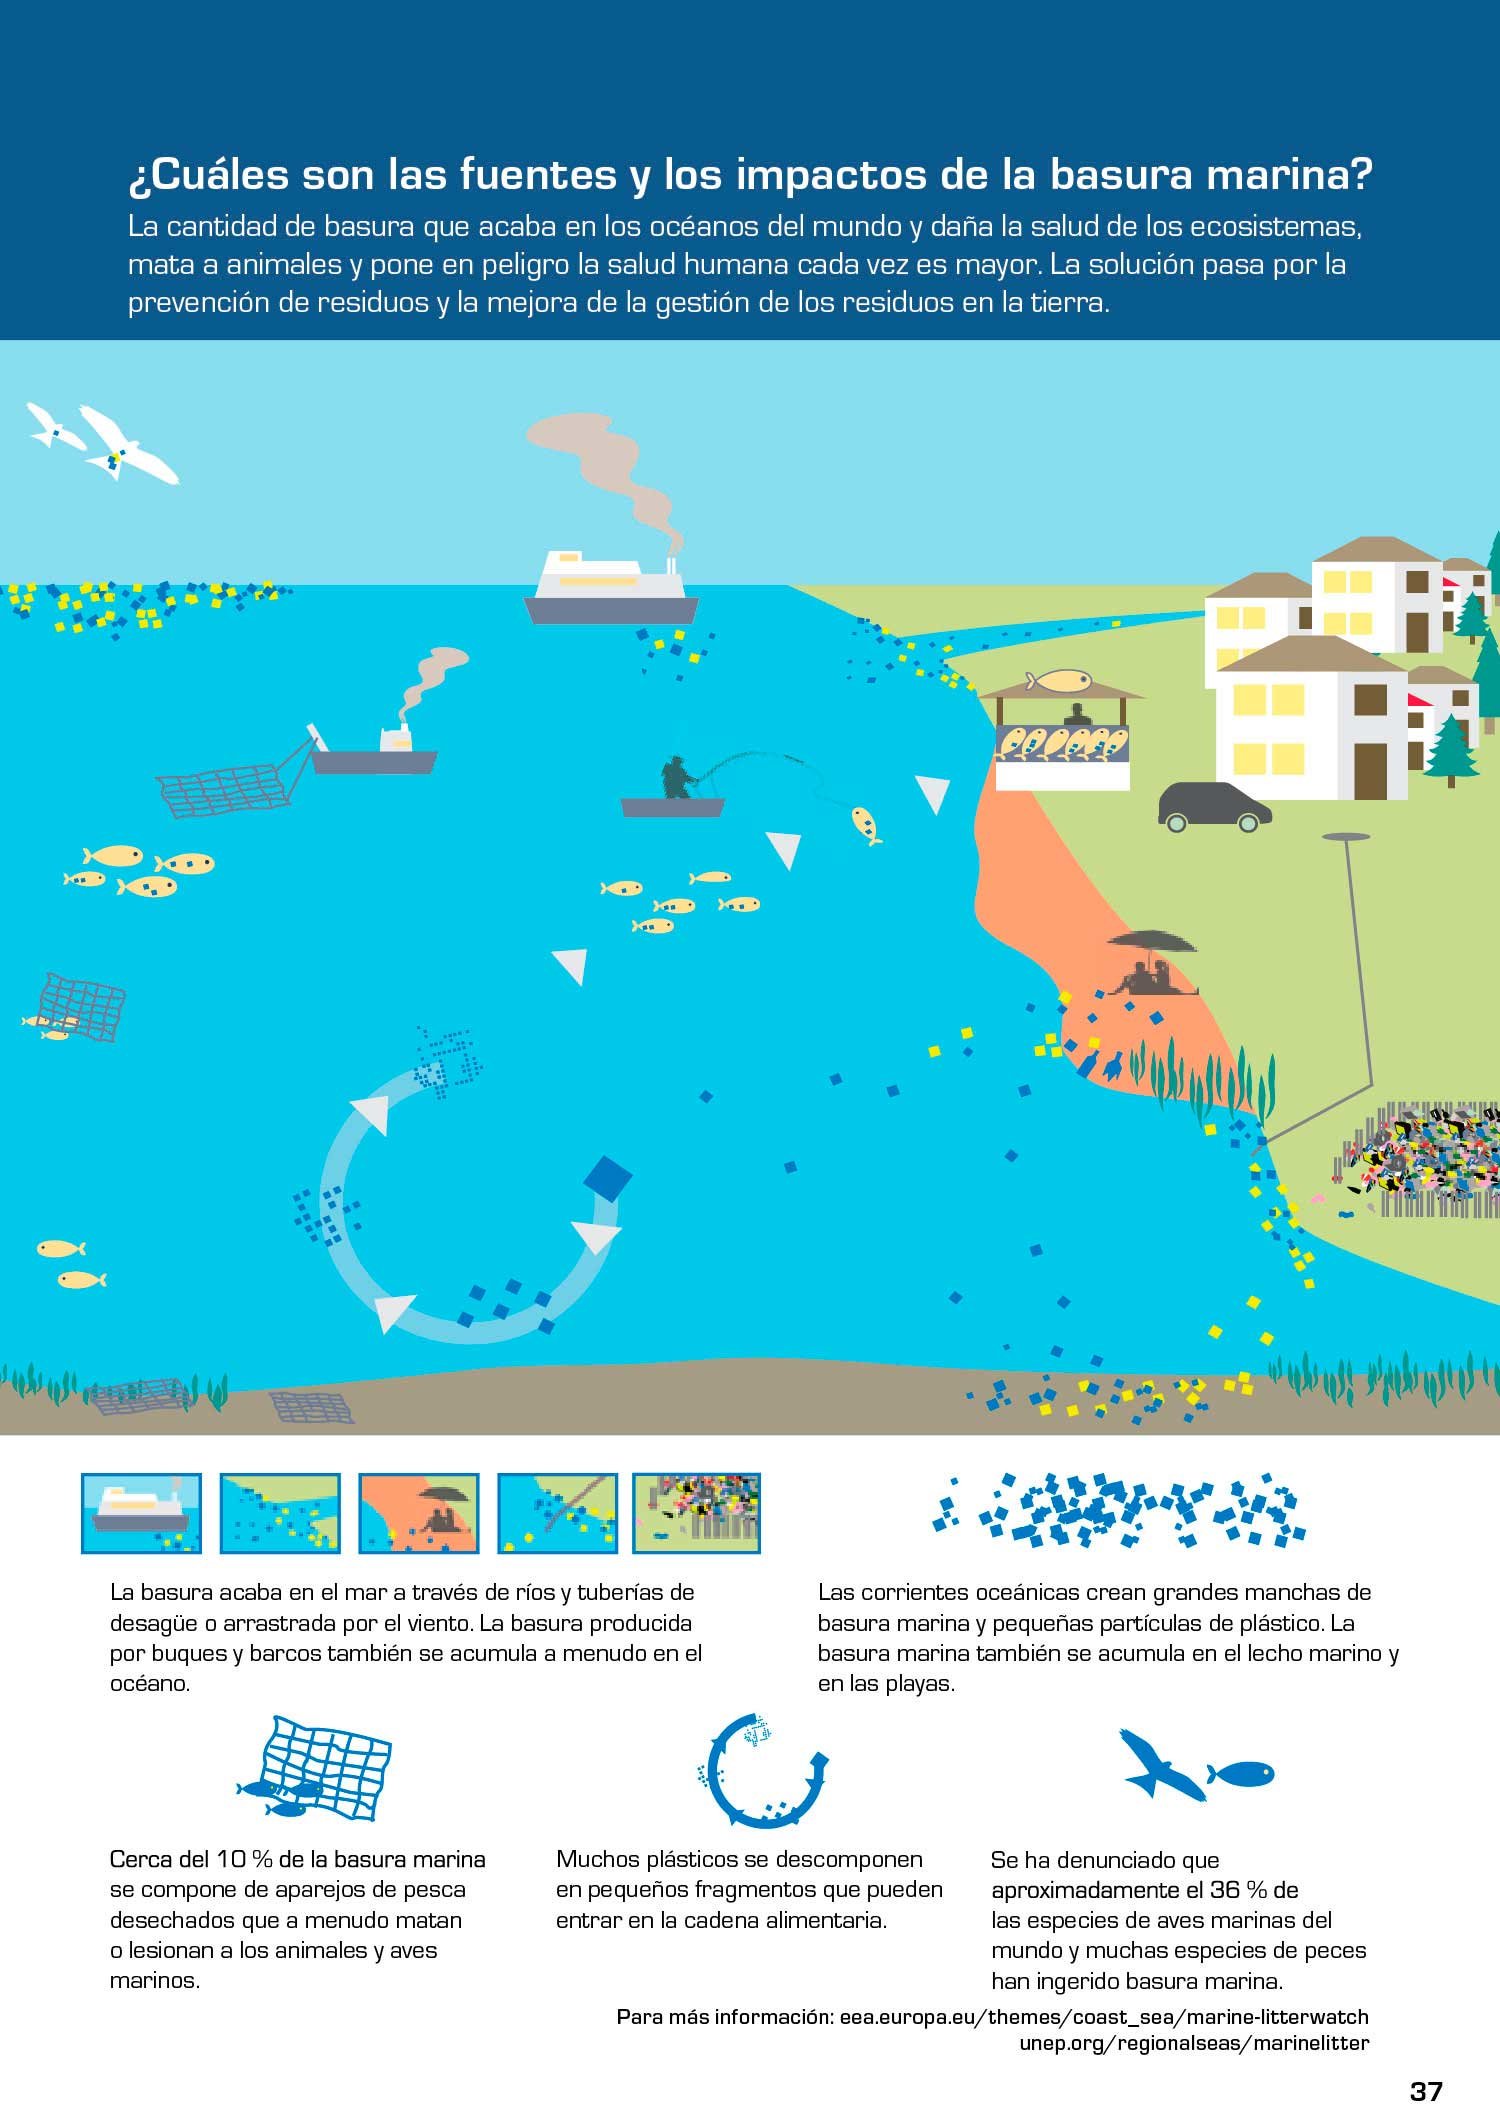 Basuras marinas, plásticos y microplásticos: orígenes, impactos y consecuencias de una amenaza 